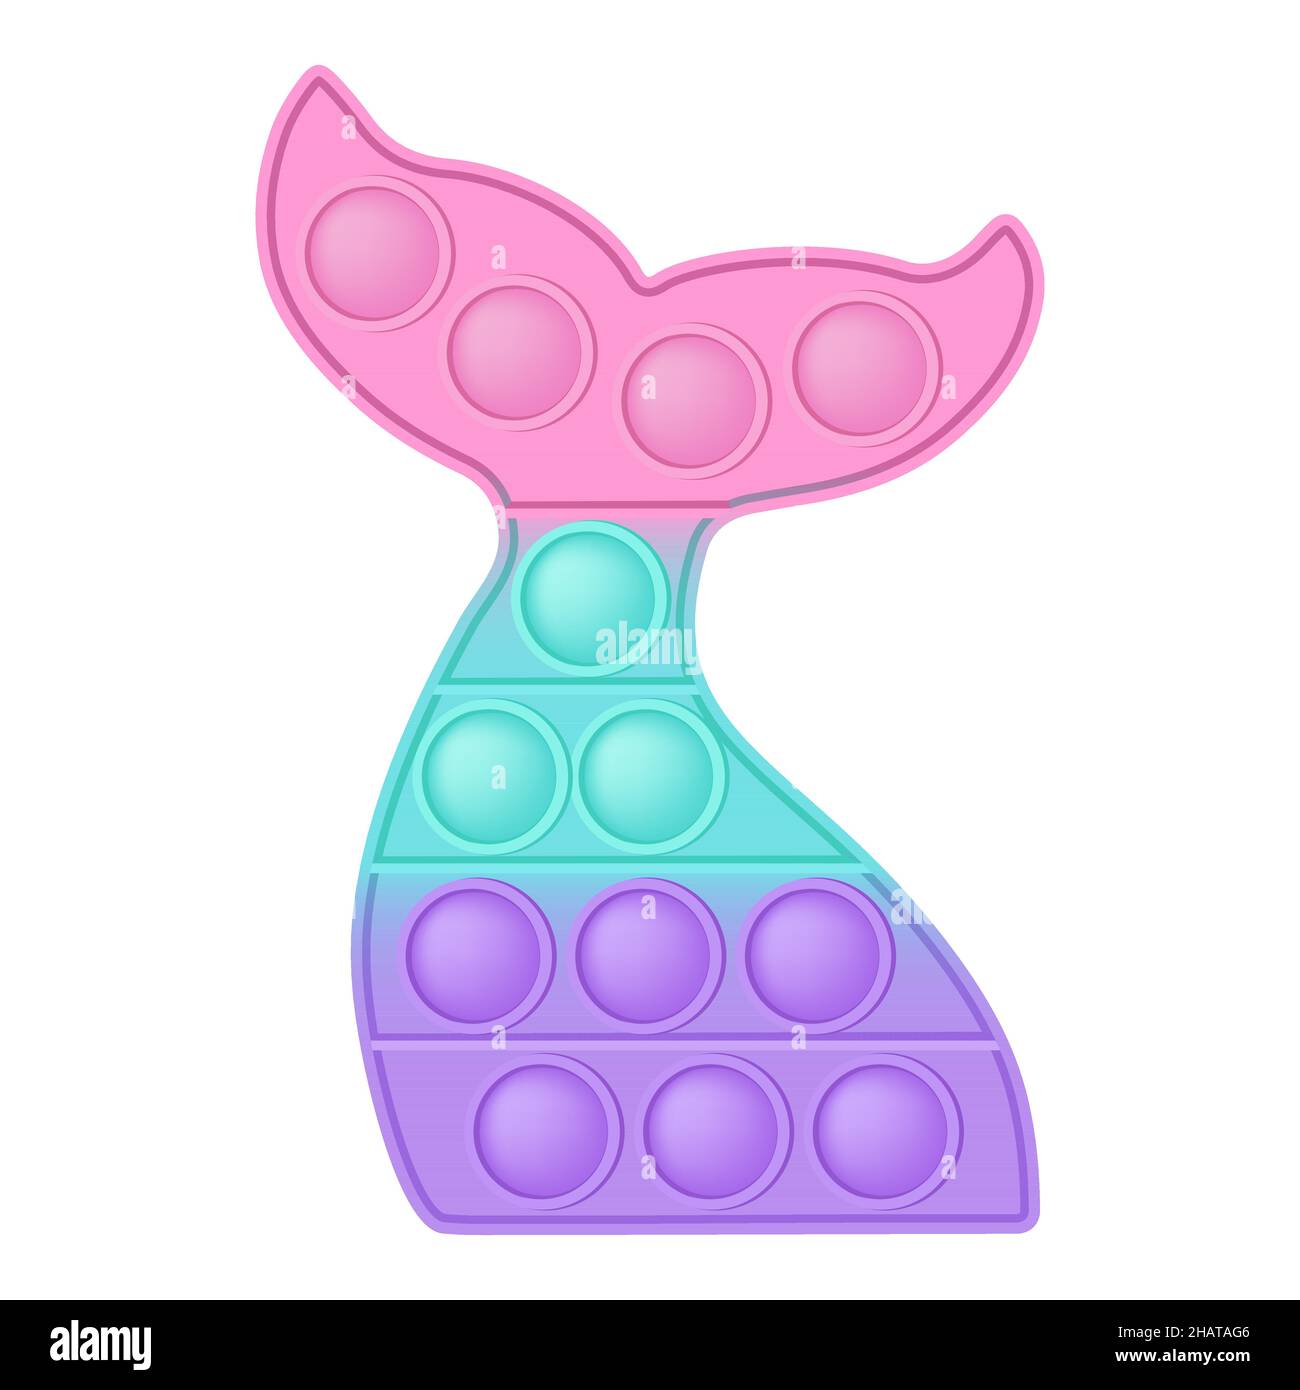 La coda della sirena di Popit è un giocattolo in silicone alla moda per i fedgets. Giocattolo antistress addictive in colori pastello. Ansia bolla che sviluppa i giocattoli vibranti del pop it Illustrazione Vettoriale